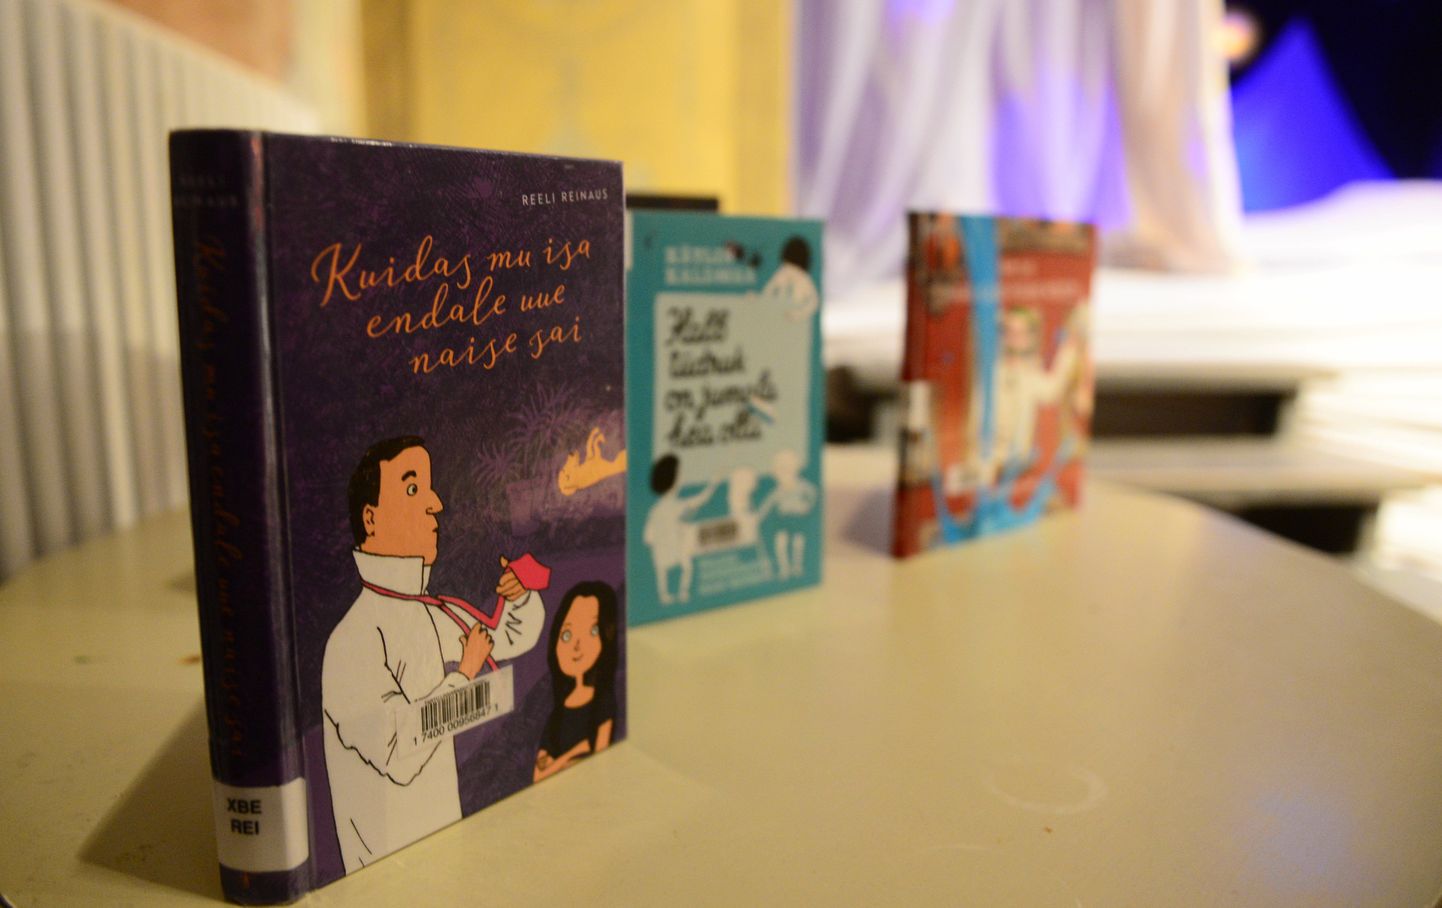 Tartu koolide neljanda klassi õpilased saavad endale kingituseks Reeli Reinausi raamatu «Kuidas mu isa endale uue naise sai».